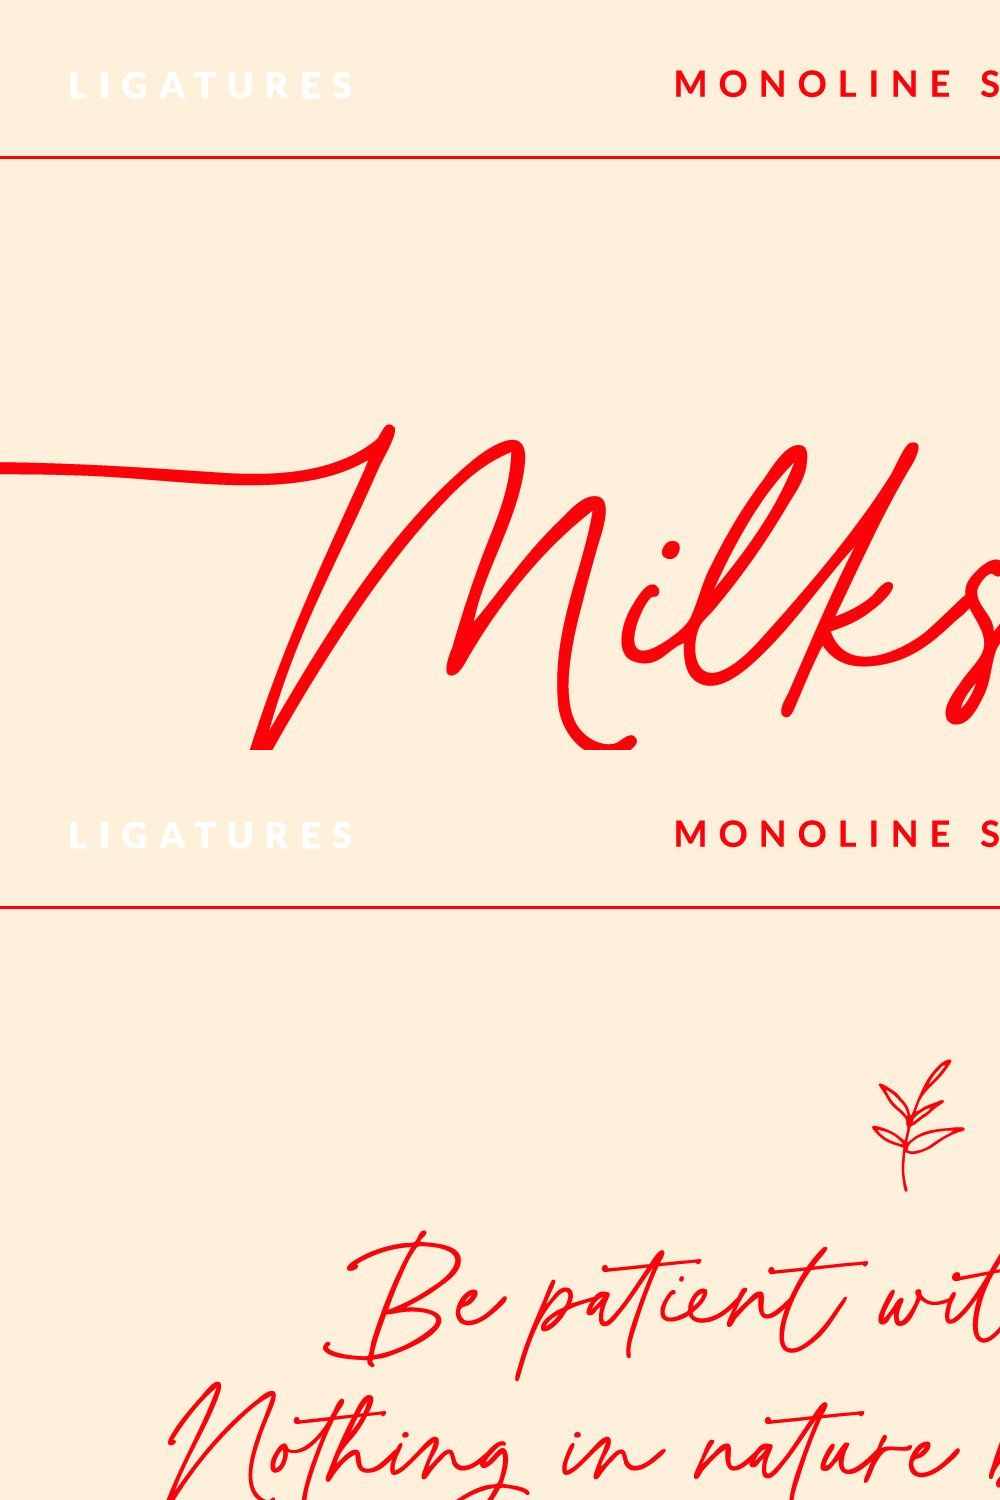 Milkshake Modern Handwritten Script pinterest preview image.